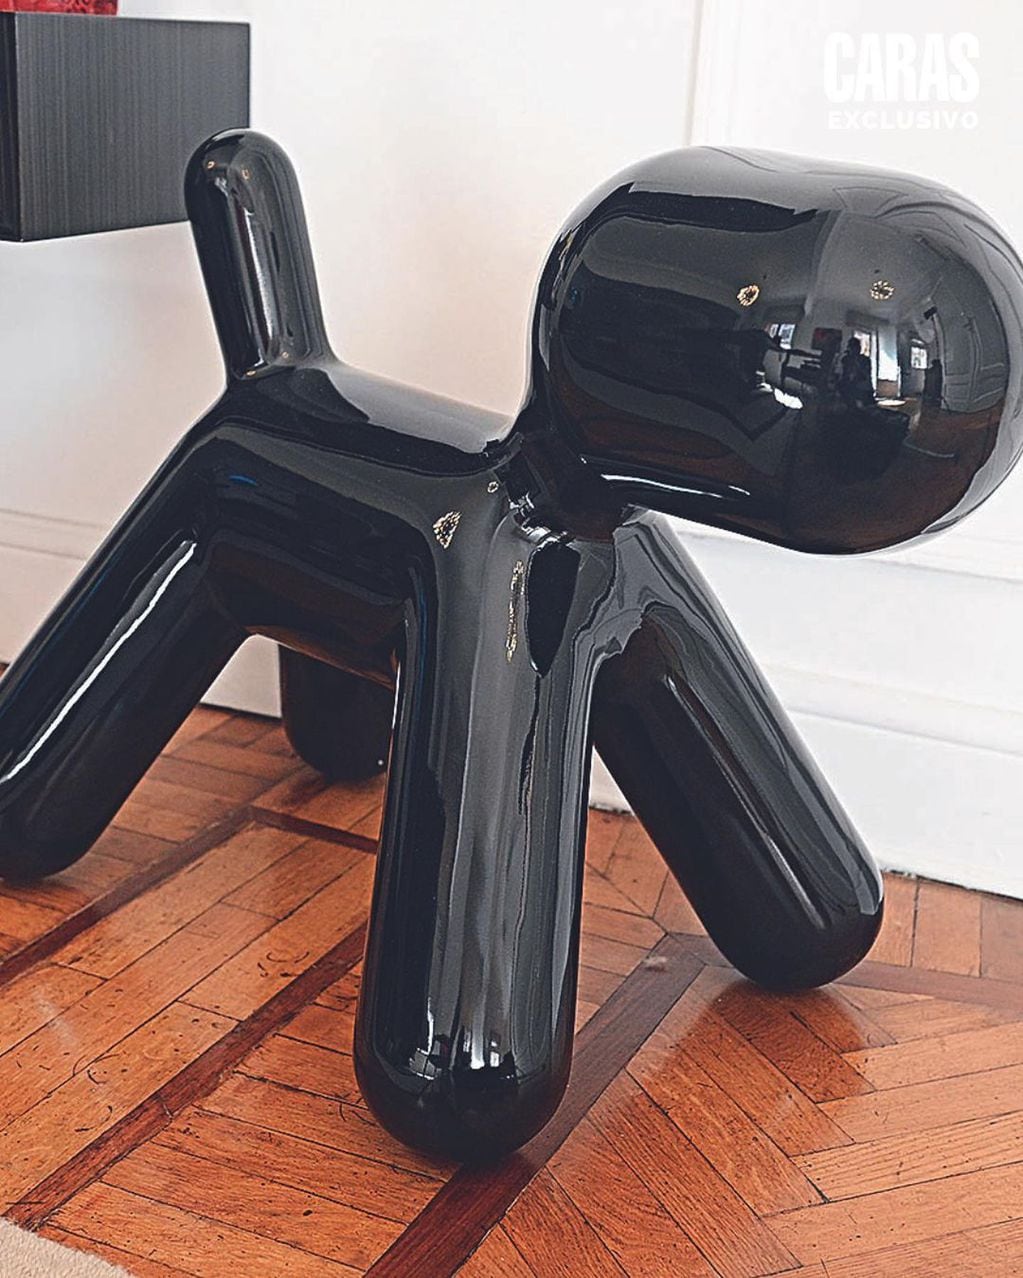 El mobiliario moderno incluye una escultura de un perro